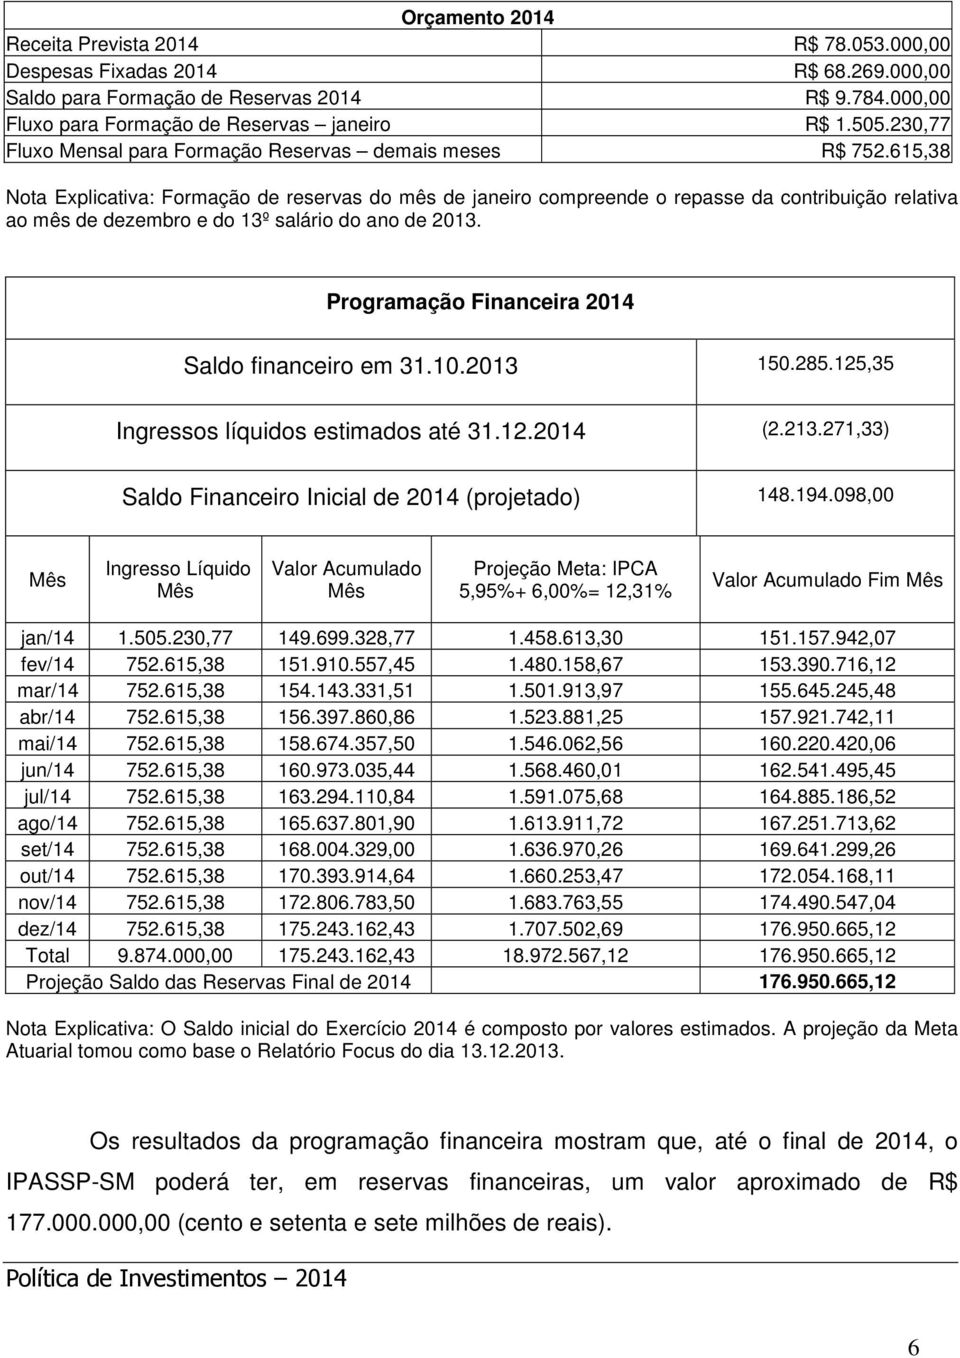 615,38 Nota Explicativa: Formação de reservas do mês de janeiro compreende o repasse da contribuição relativa ao mês de dezembro e do 13º salário do ano de 2013.